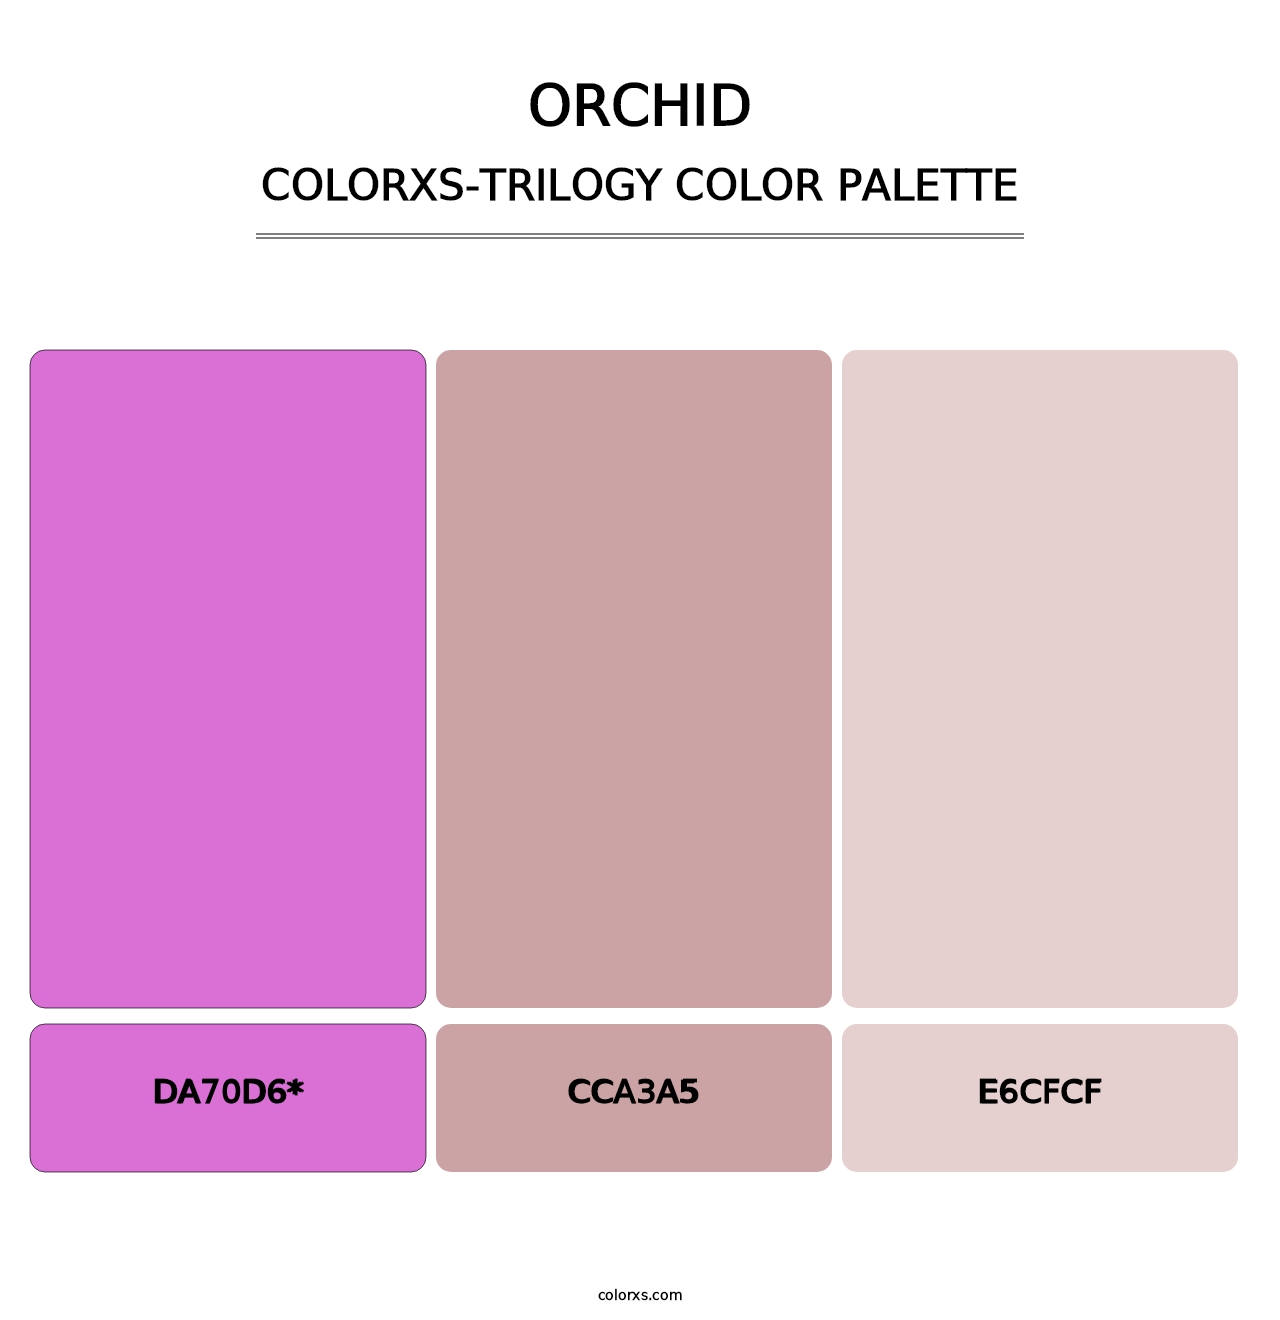 Orchid - Colorxs Trilogy Palette